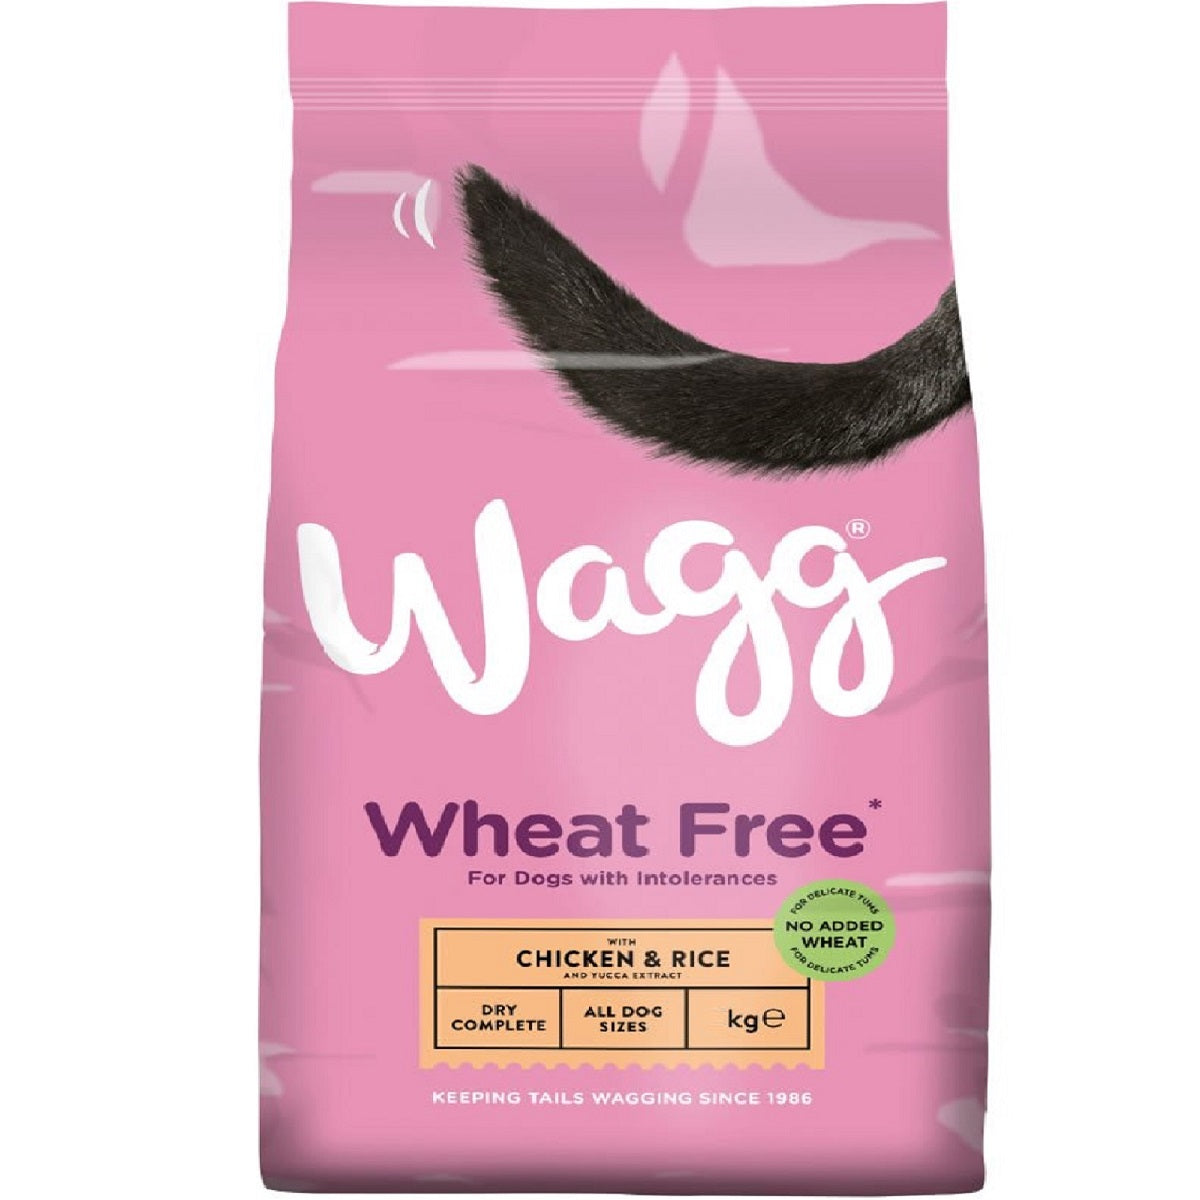 Wagg - Wheat Free